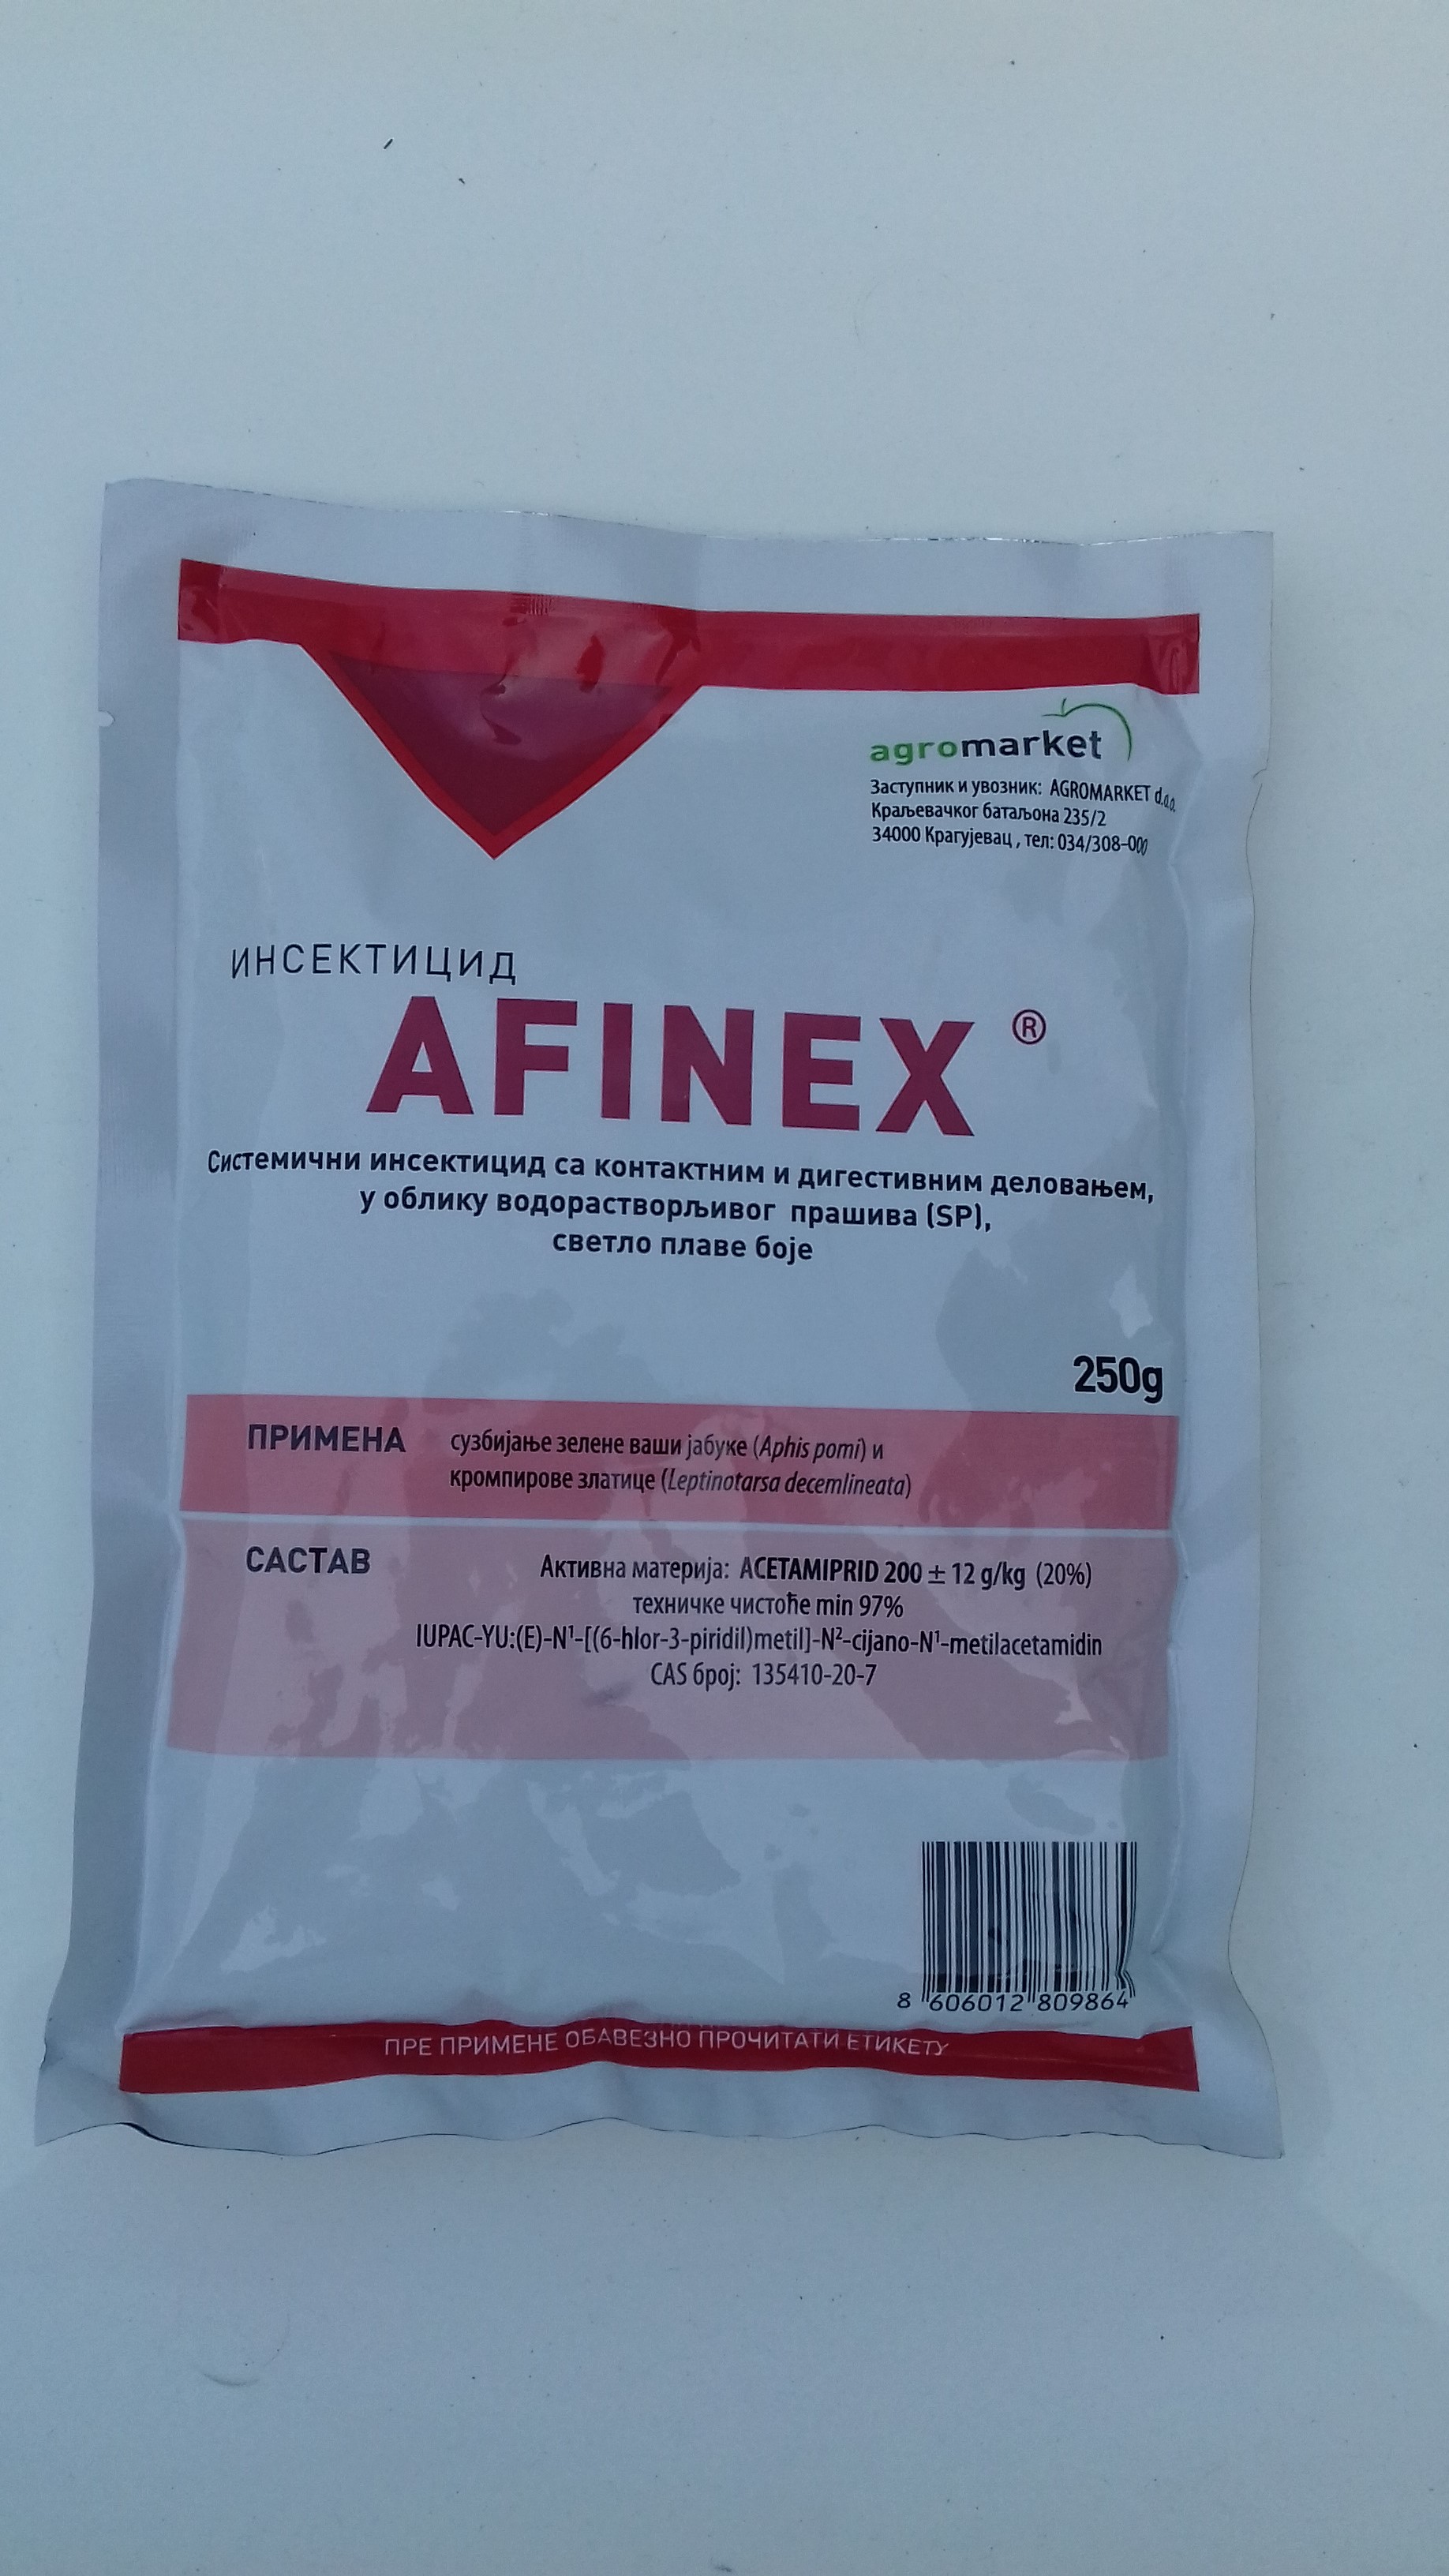 Afinex 20SP 250g